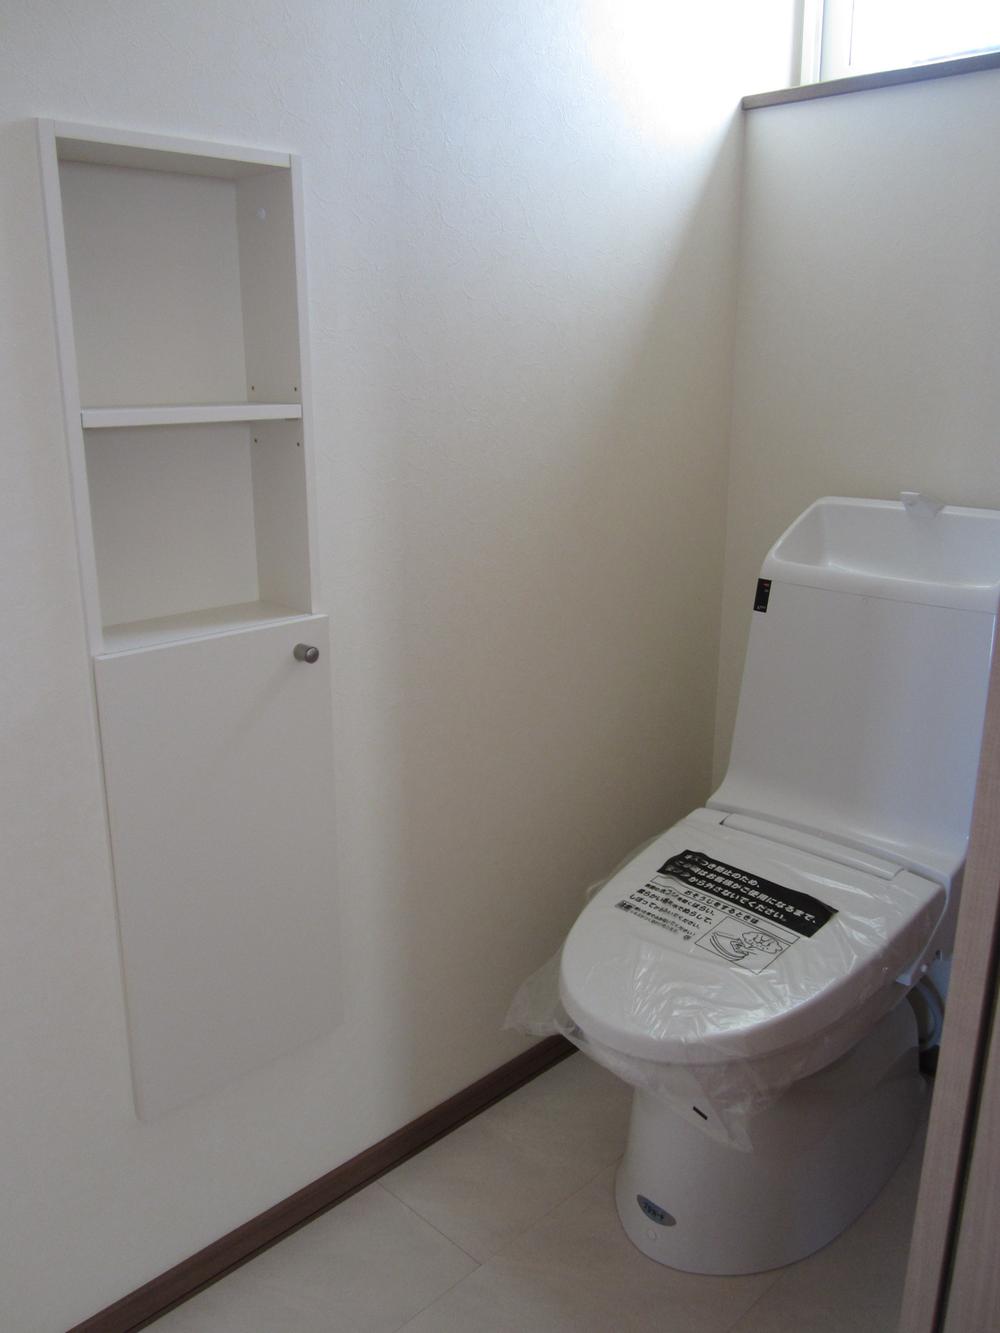 Toilet. With storage of toilet